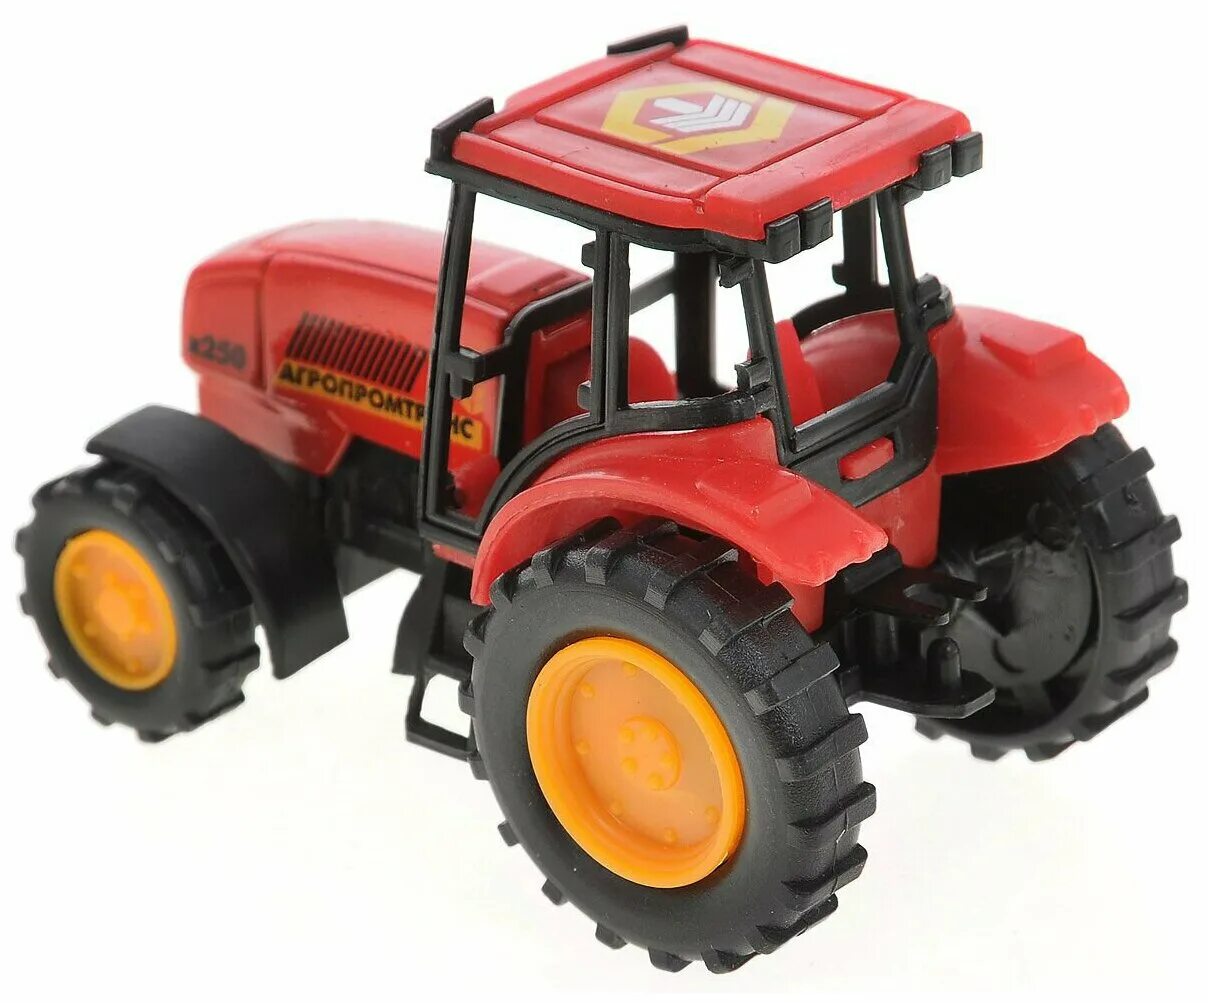 Трактор купить в туле. Трактор Технопарк Агропромтранс (20119-r) 7 см. Игрушки трактор красный Тайо. Игрушка трактор tractor красный. Игрушечные модели тракторов.